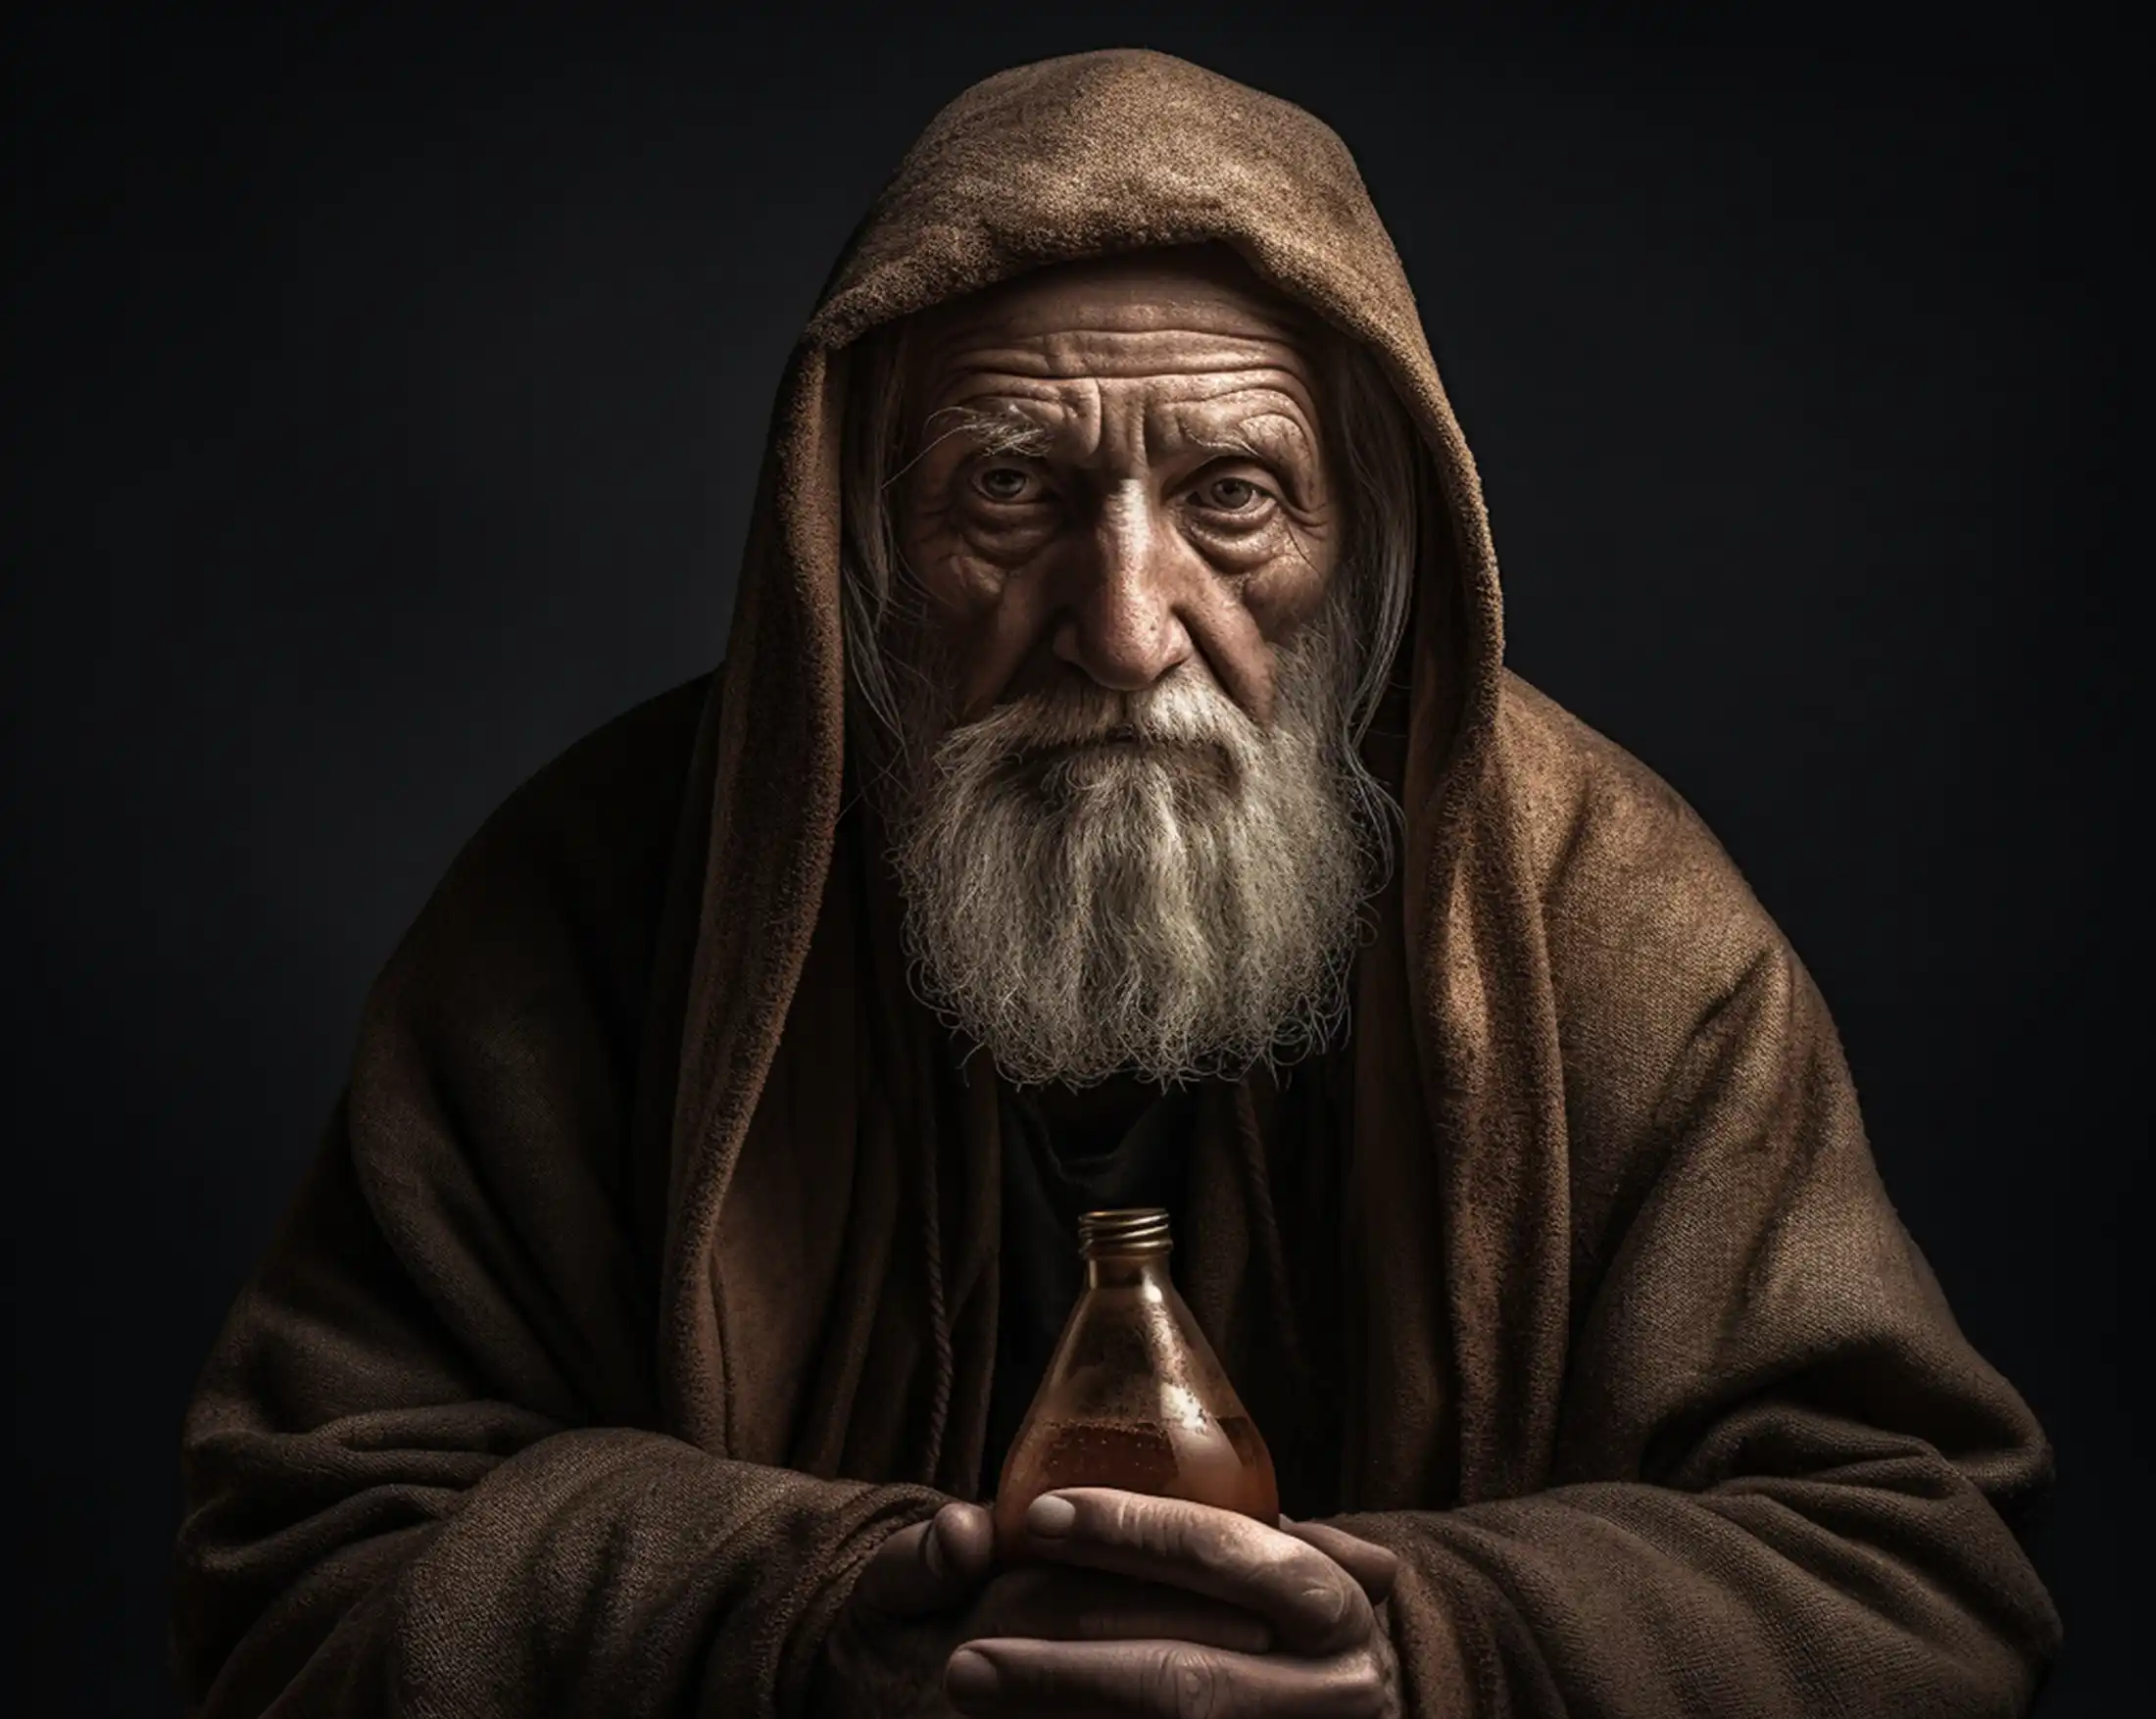 Alter Mann mit Bart vor dunklem Hintergrund hält eine Flasche in den Händen in der sich Kaltgepresstes Olivenöl und Olivenöl extra vergine befindet